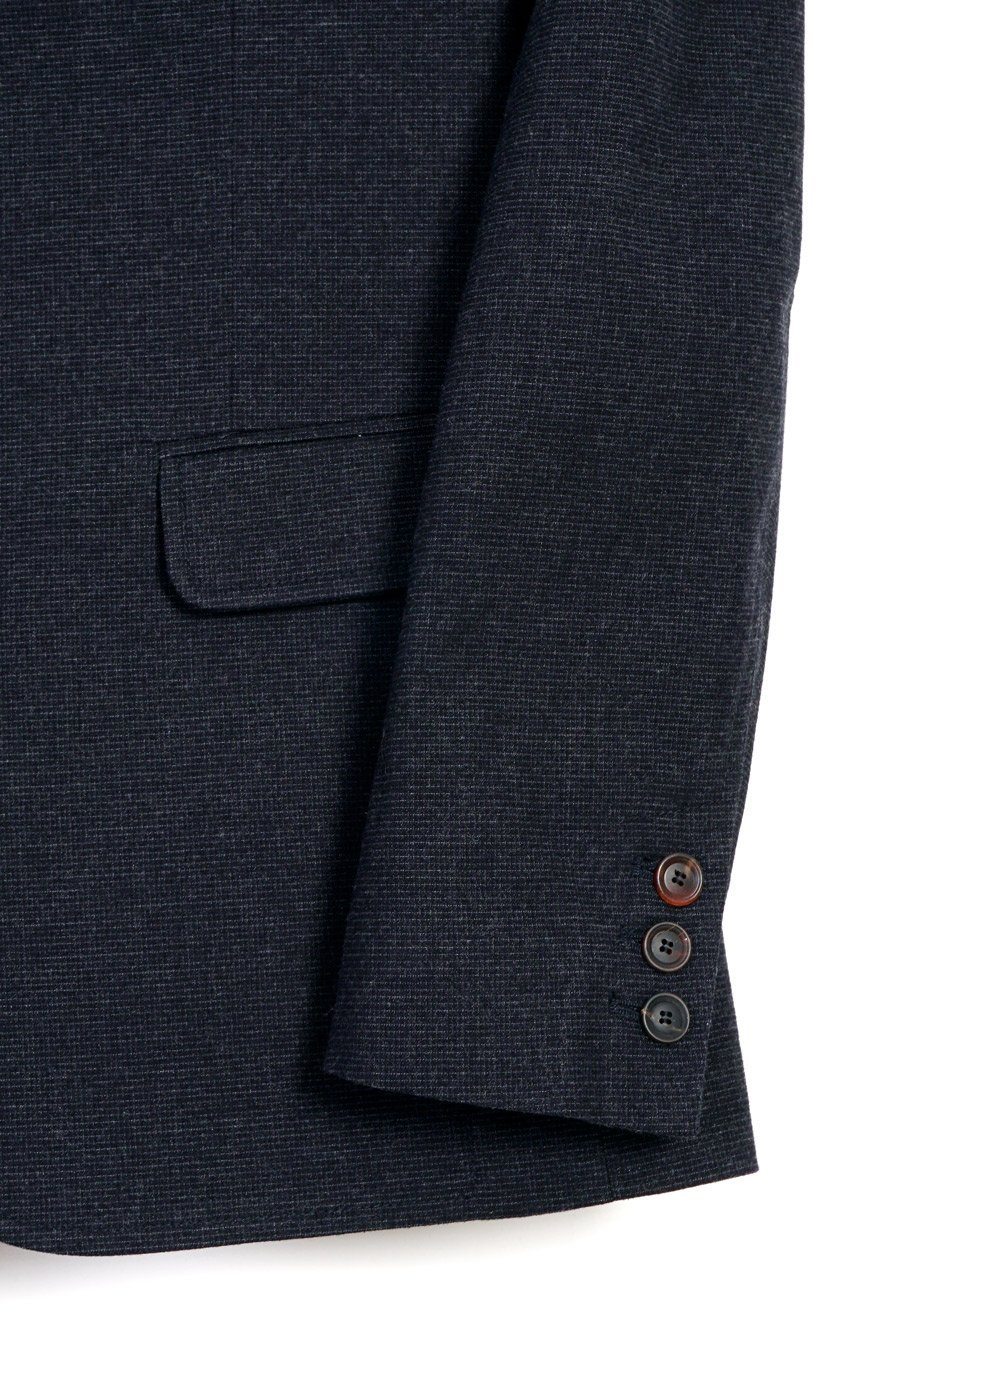 HANSEN Garments - CHRISTOFFER | Classic Two Button Blazer | Fjord - HANSEN Garments